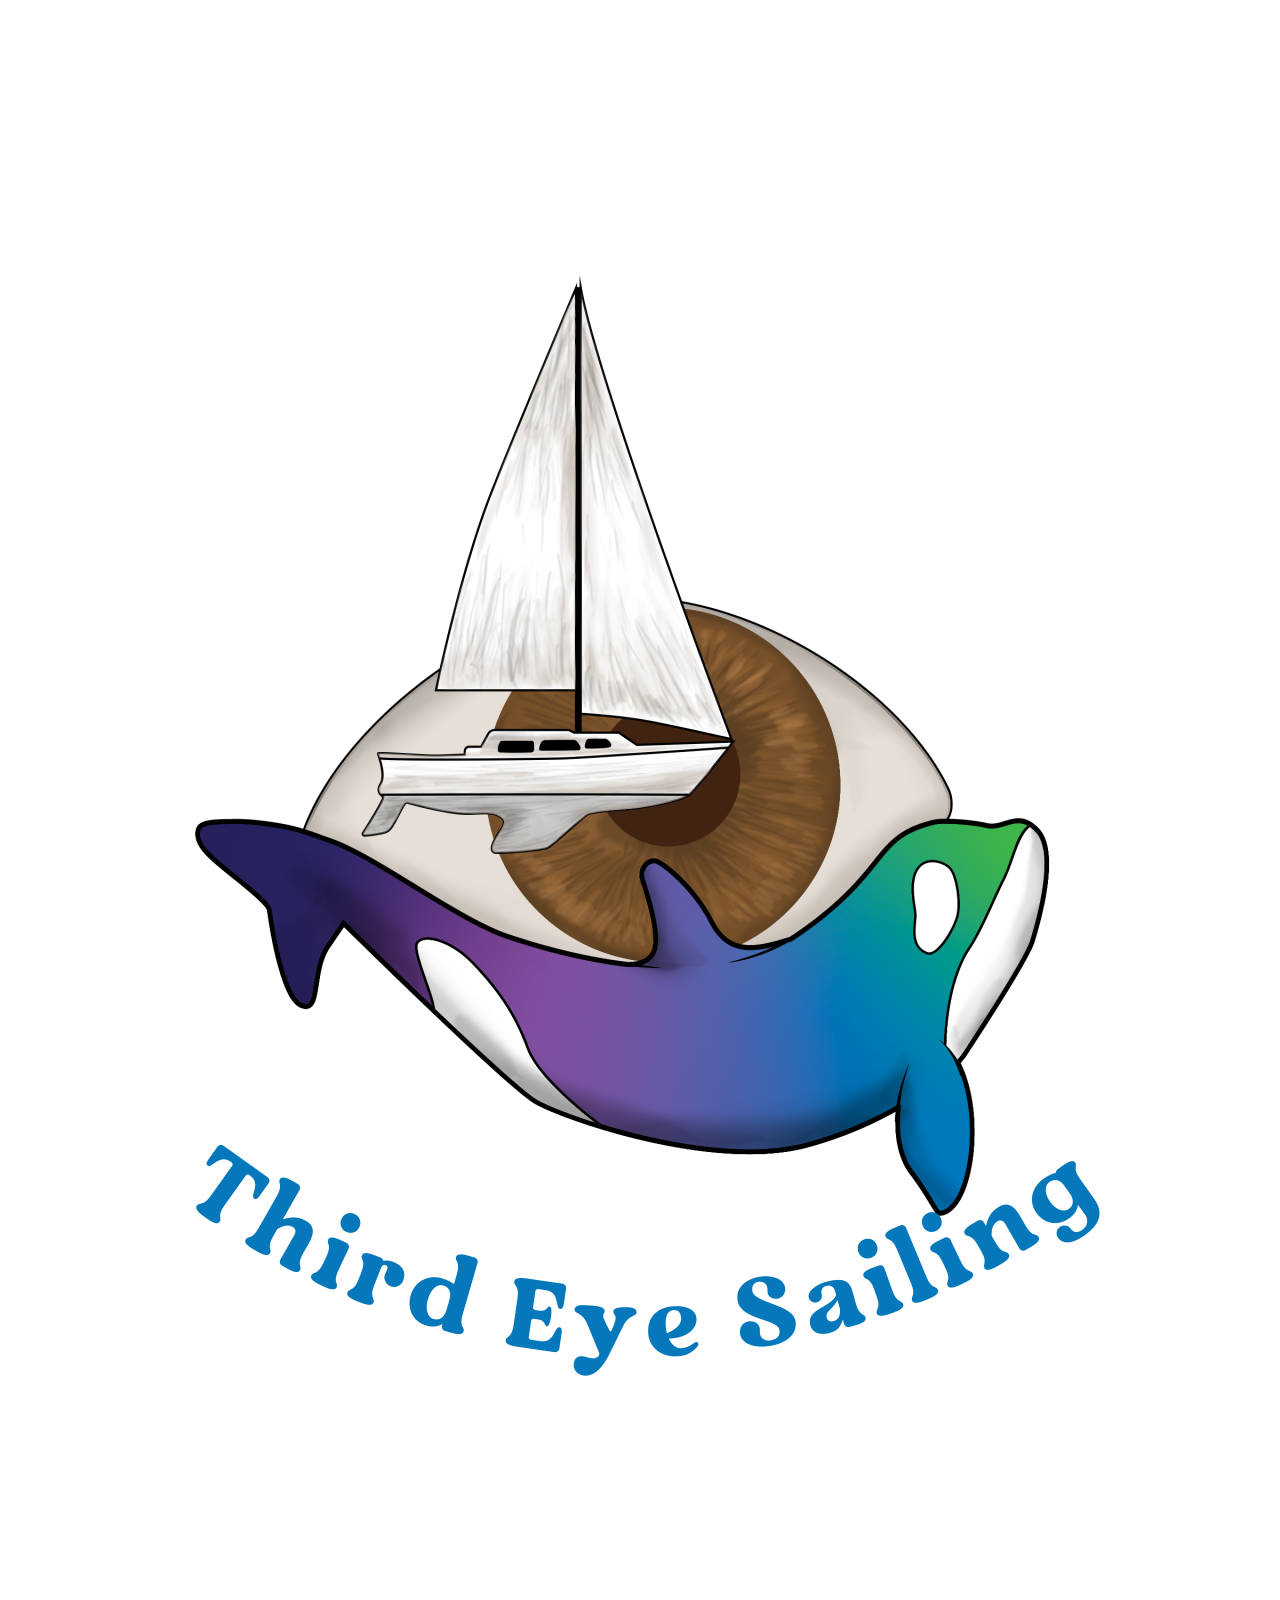 Third Eye Sailing LLC's logo